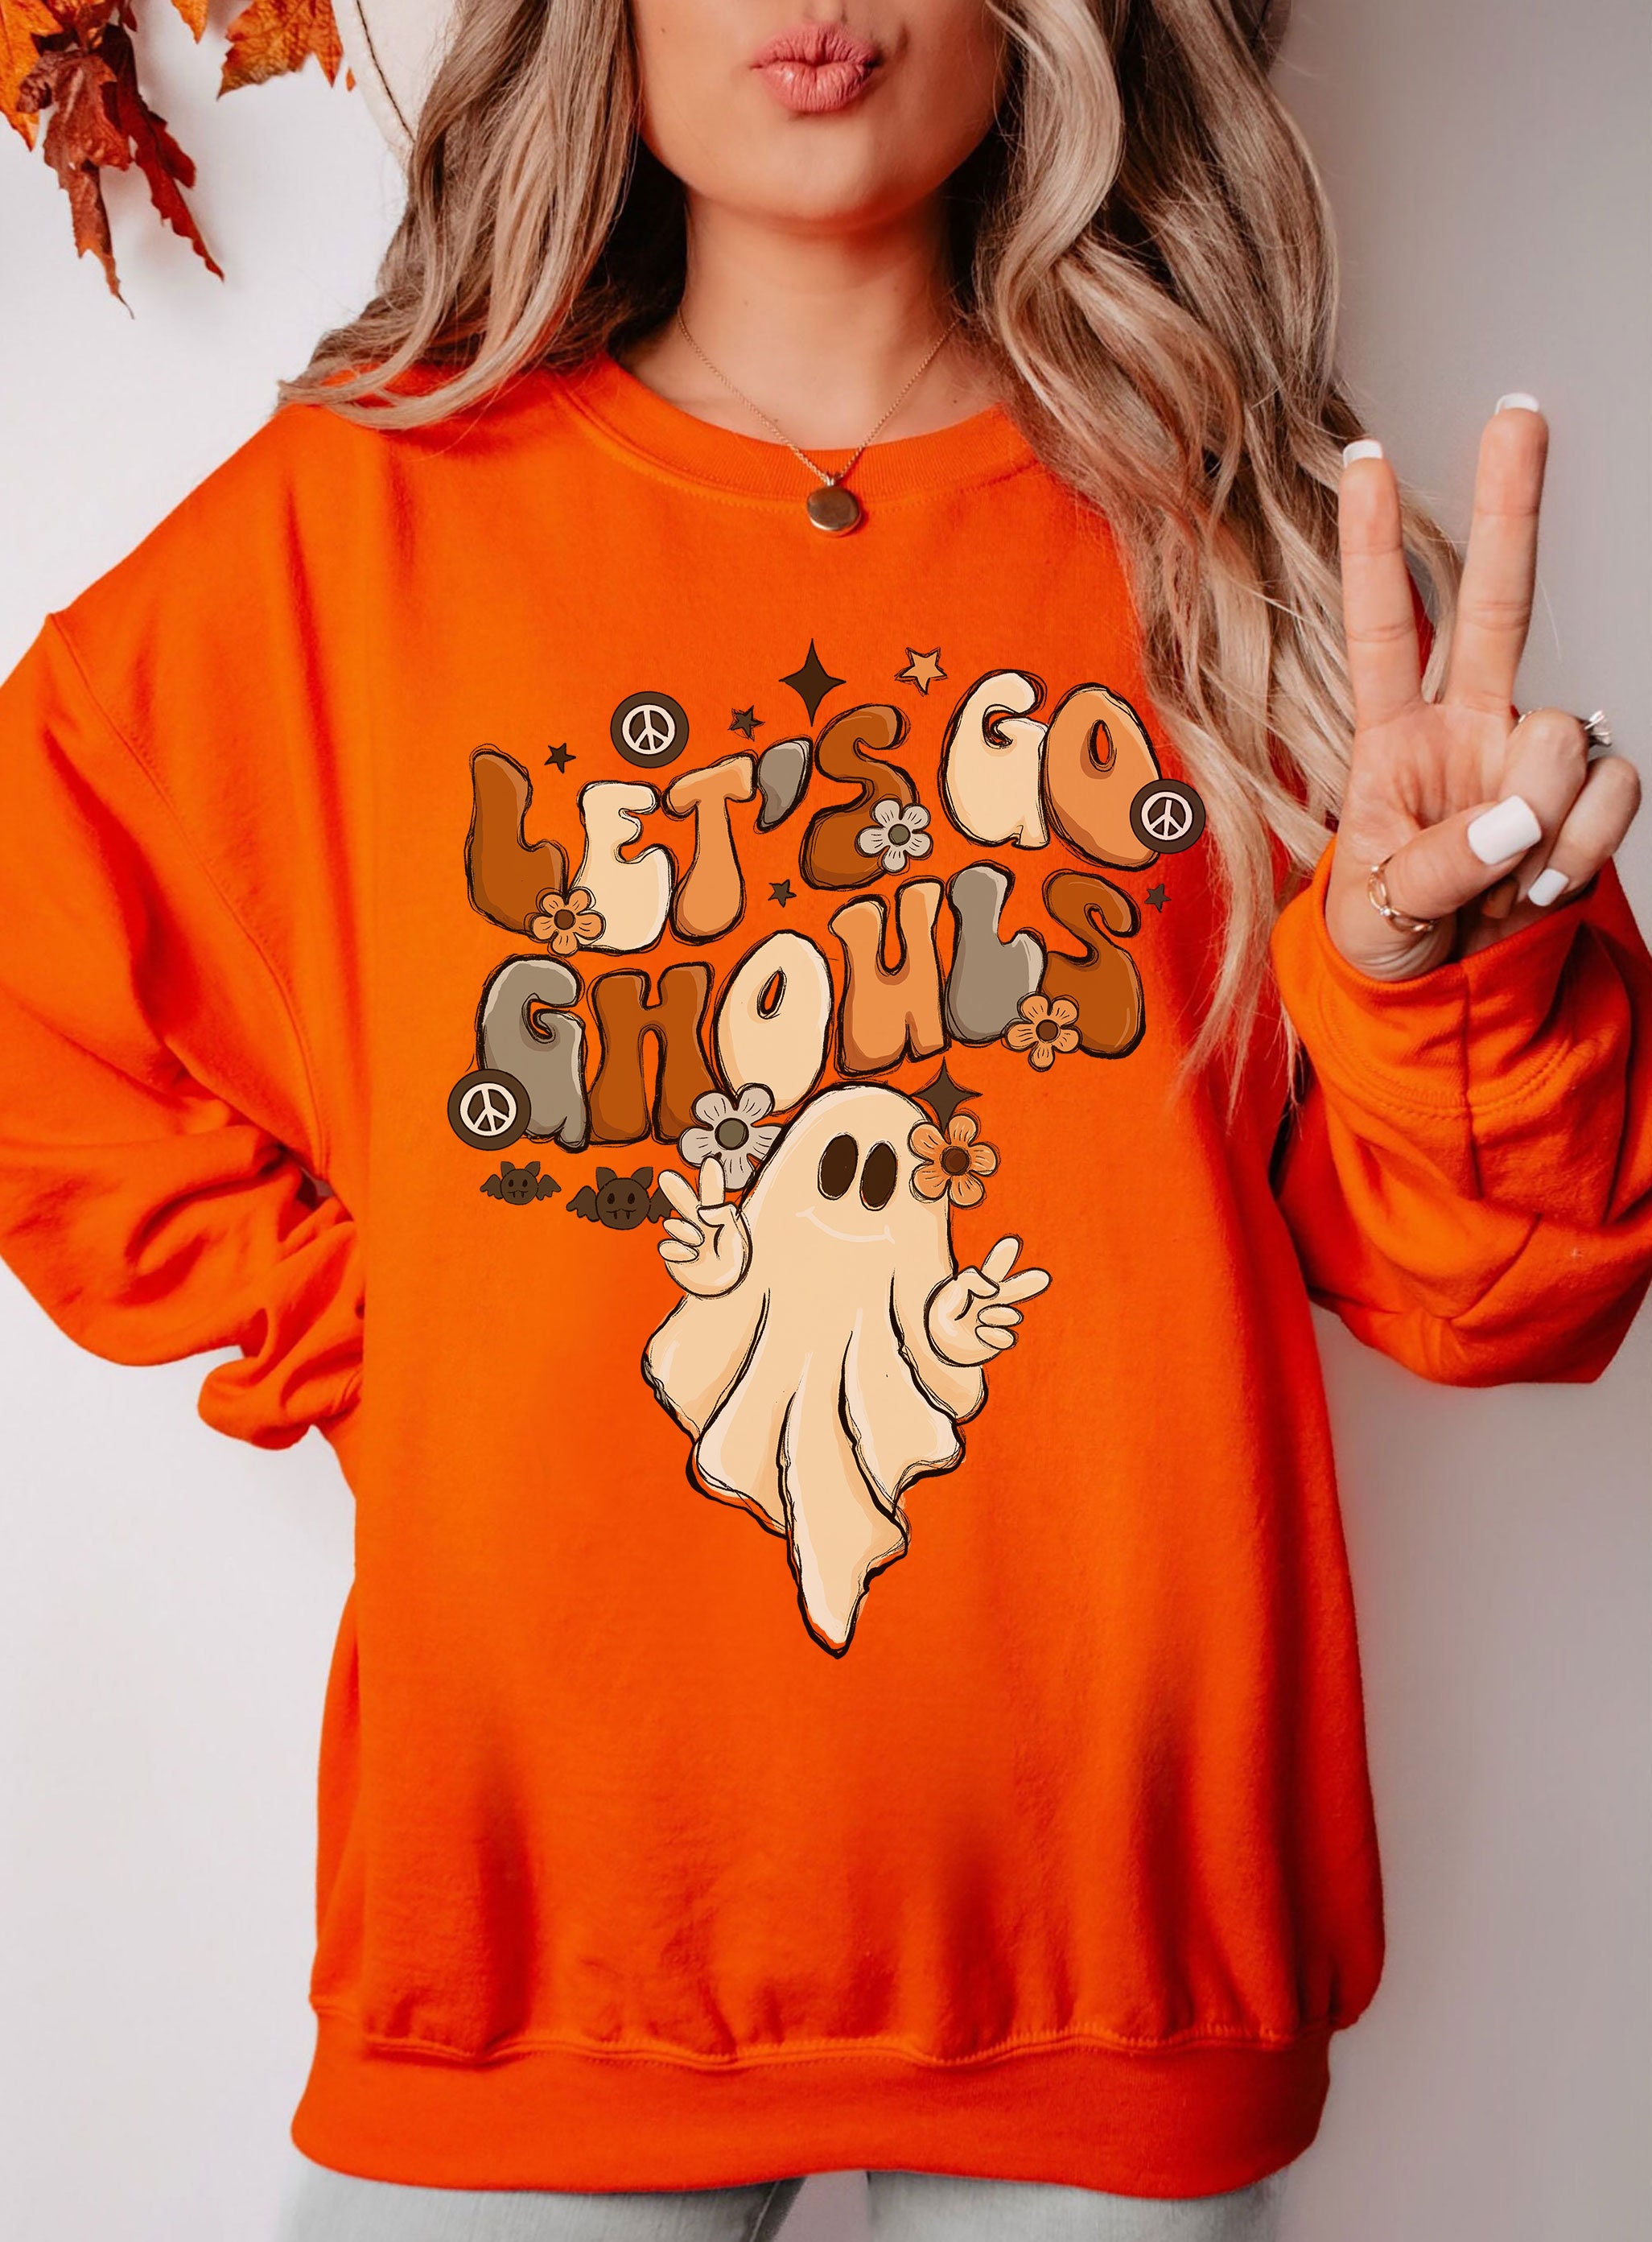 Vintage Lets Go Ghouls Sweater Vintage Halloween Sweatshirt - Etsy